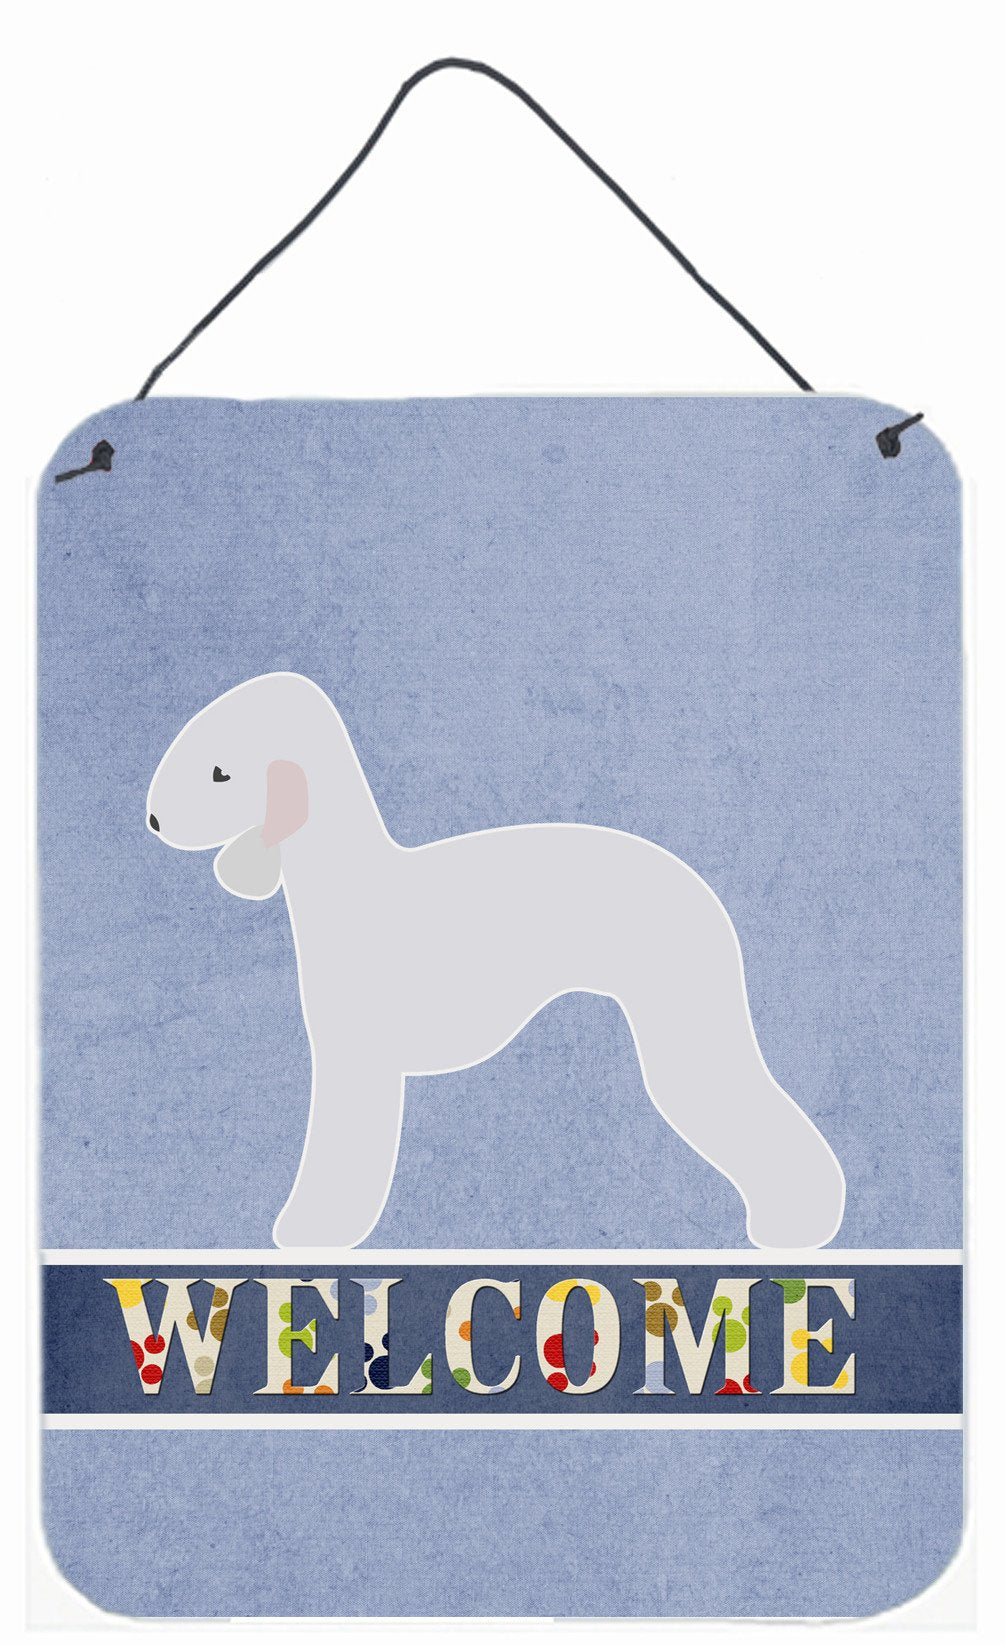 Bedlington Terrier Welcome Wall or Door Hanging Prints BB5498DS1216 by Caroline's Treasures